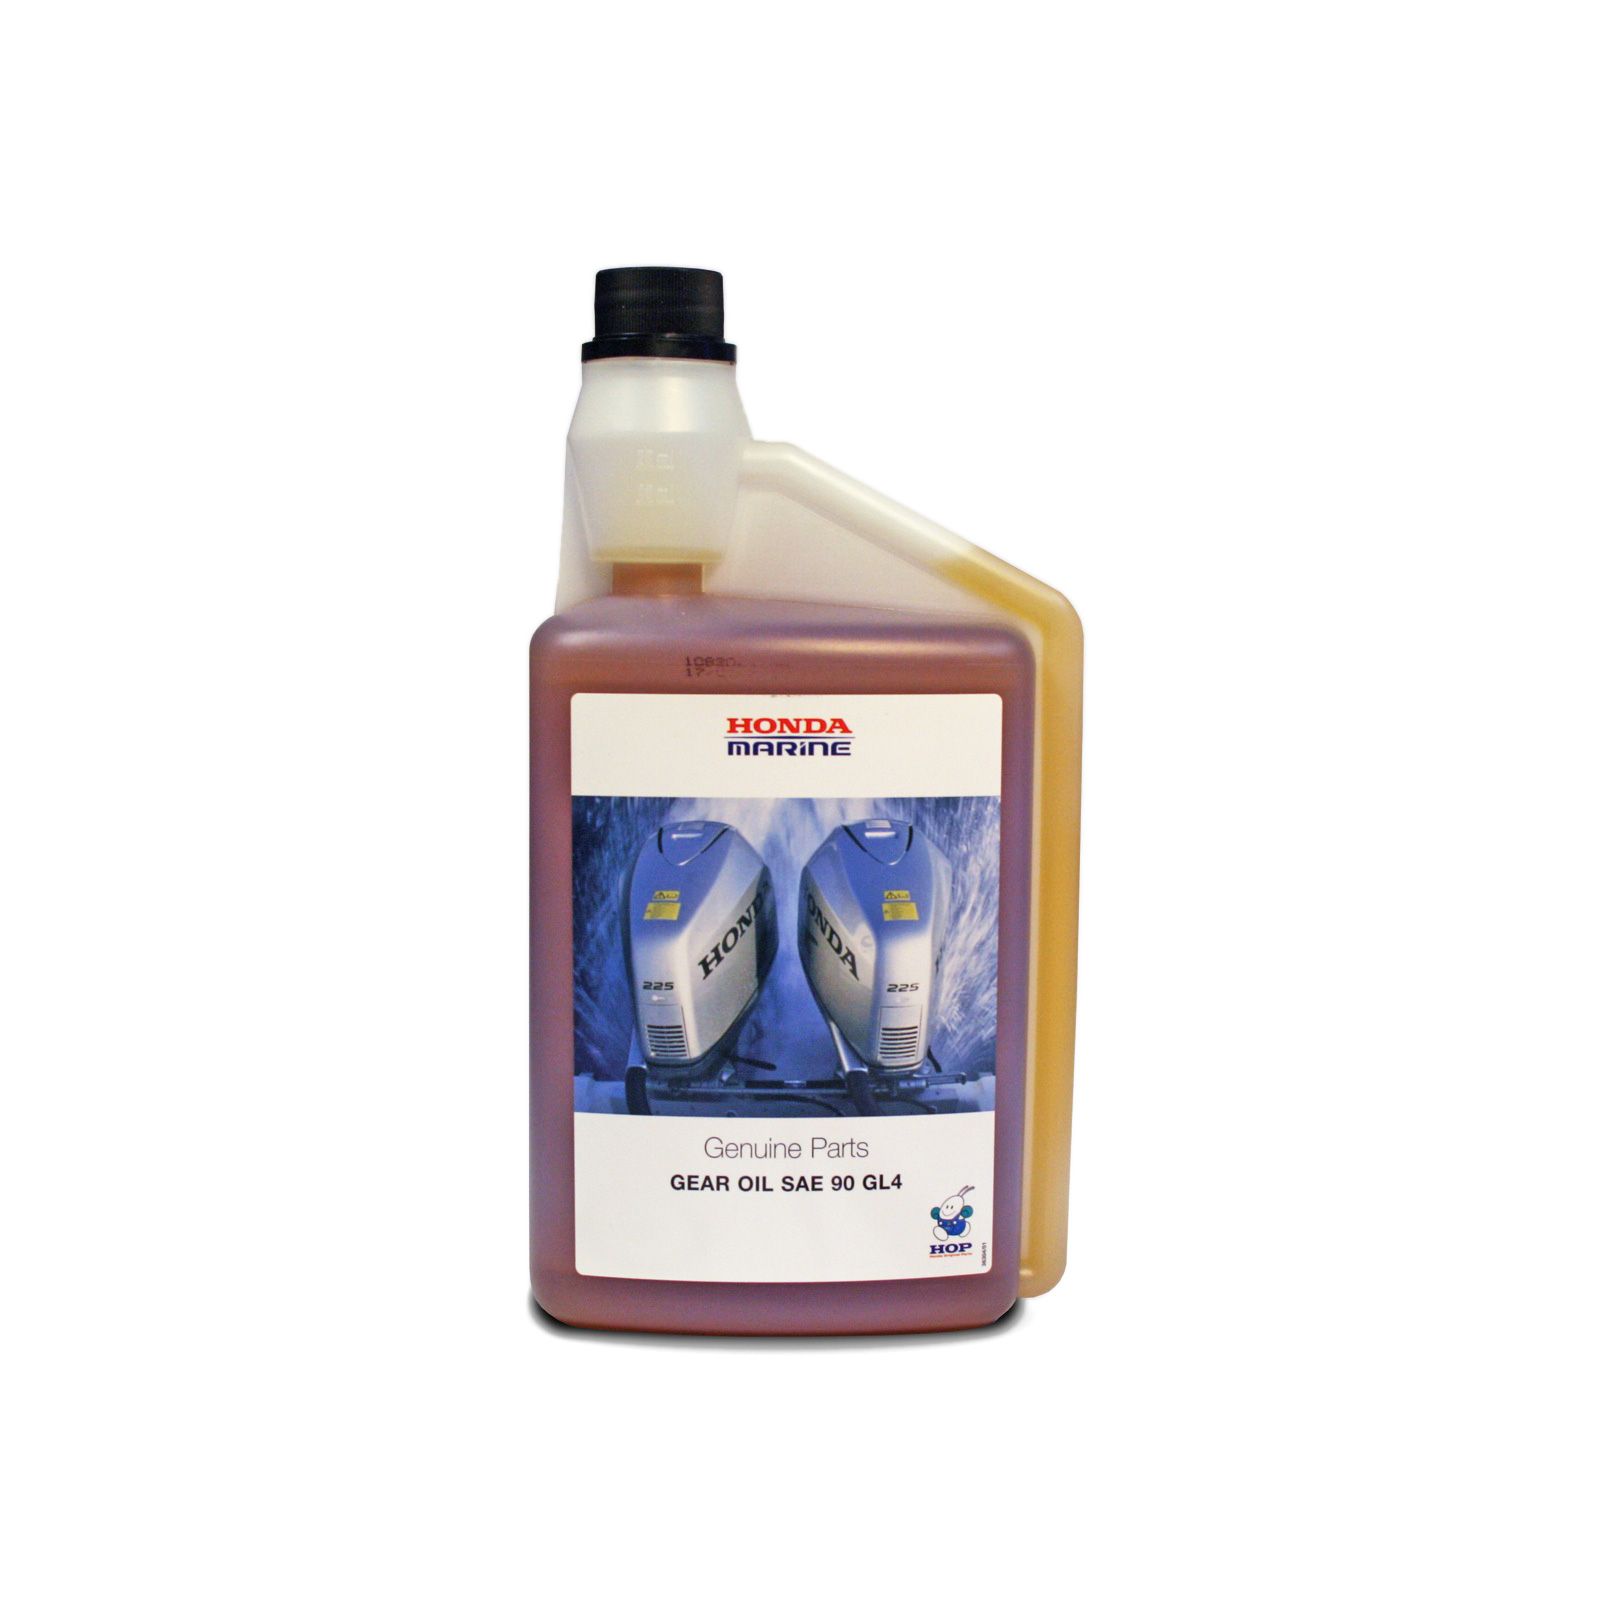 Морское масло для зубчатых передач — SAE 90 GL4. 1 бутылка объемом 1 литр